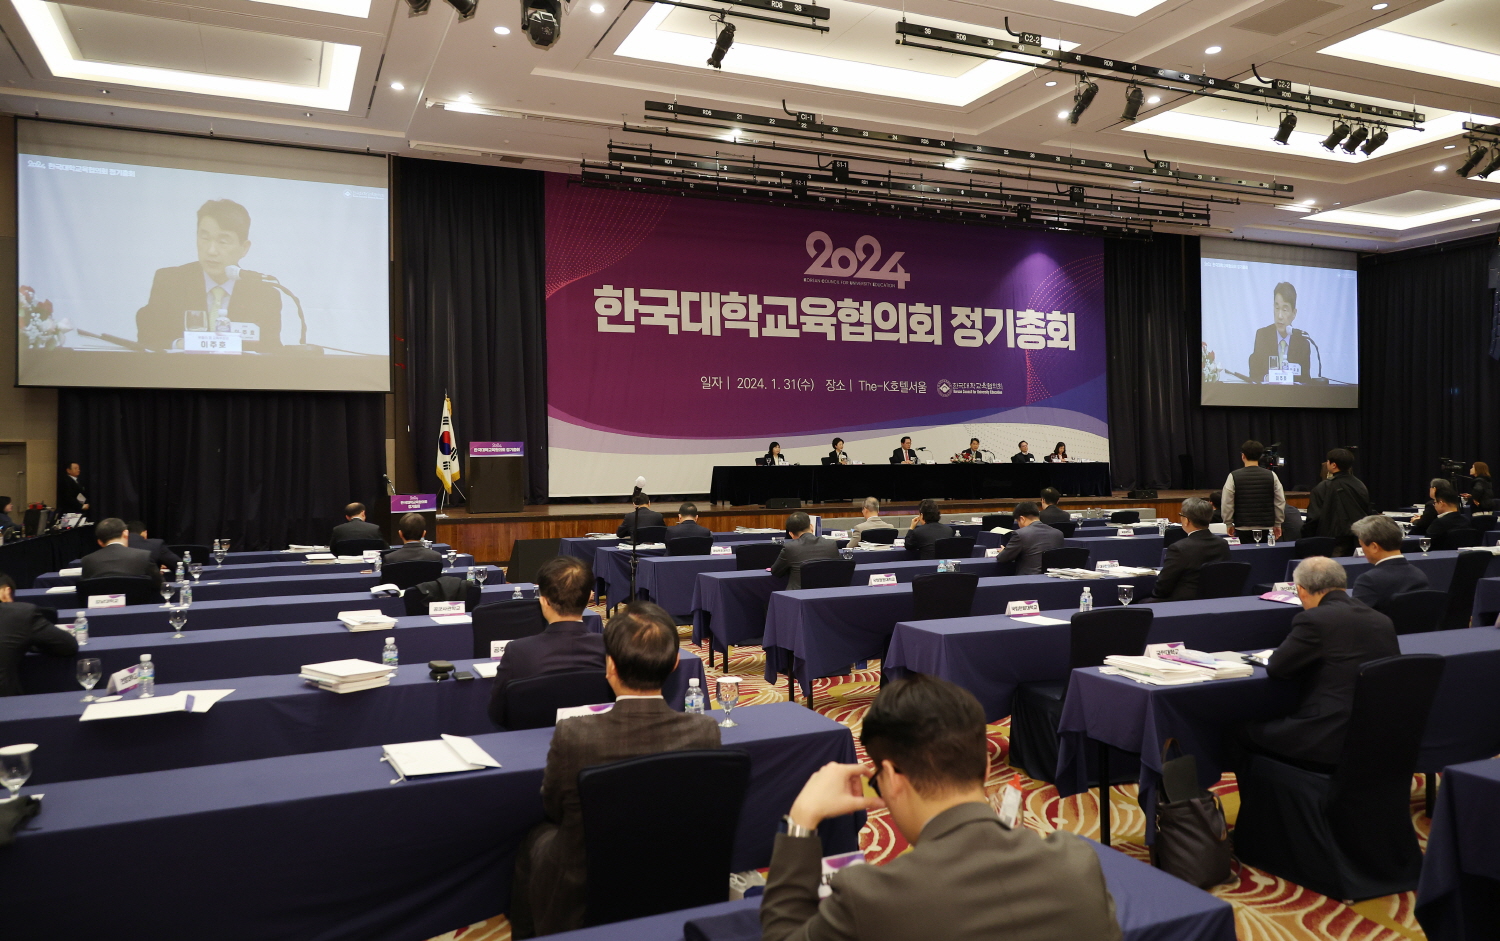 이주호 부총리 겸 교육부장관은 1월 31일(수), ‘2024년 한국대학교육협의회 정기총회’에 참석